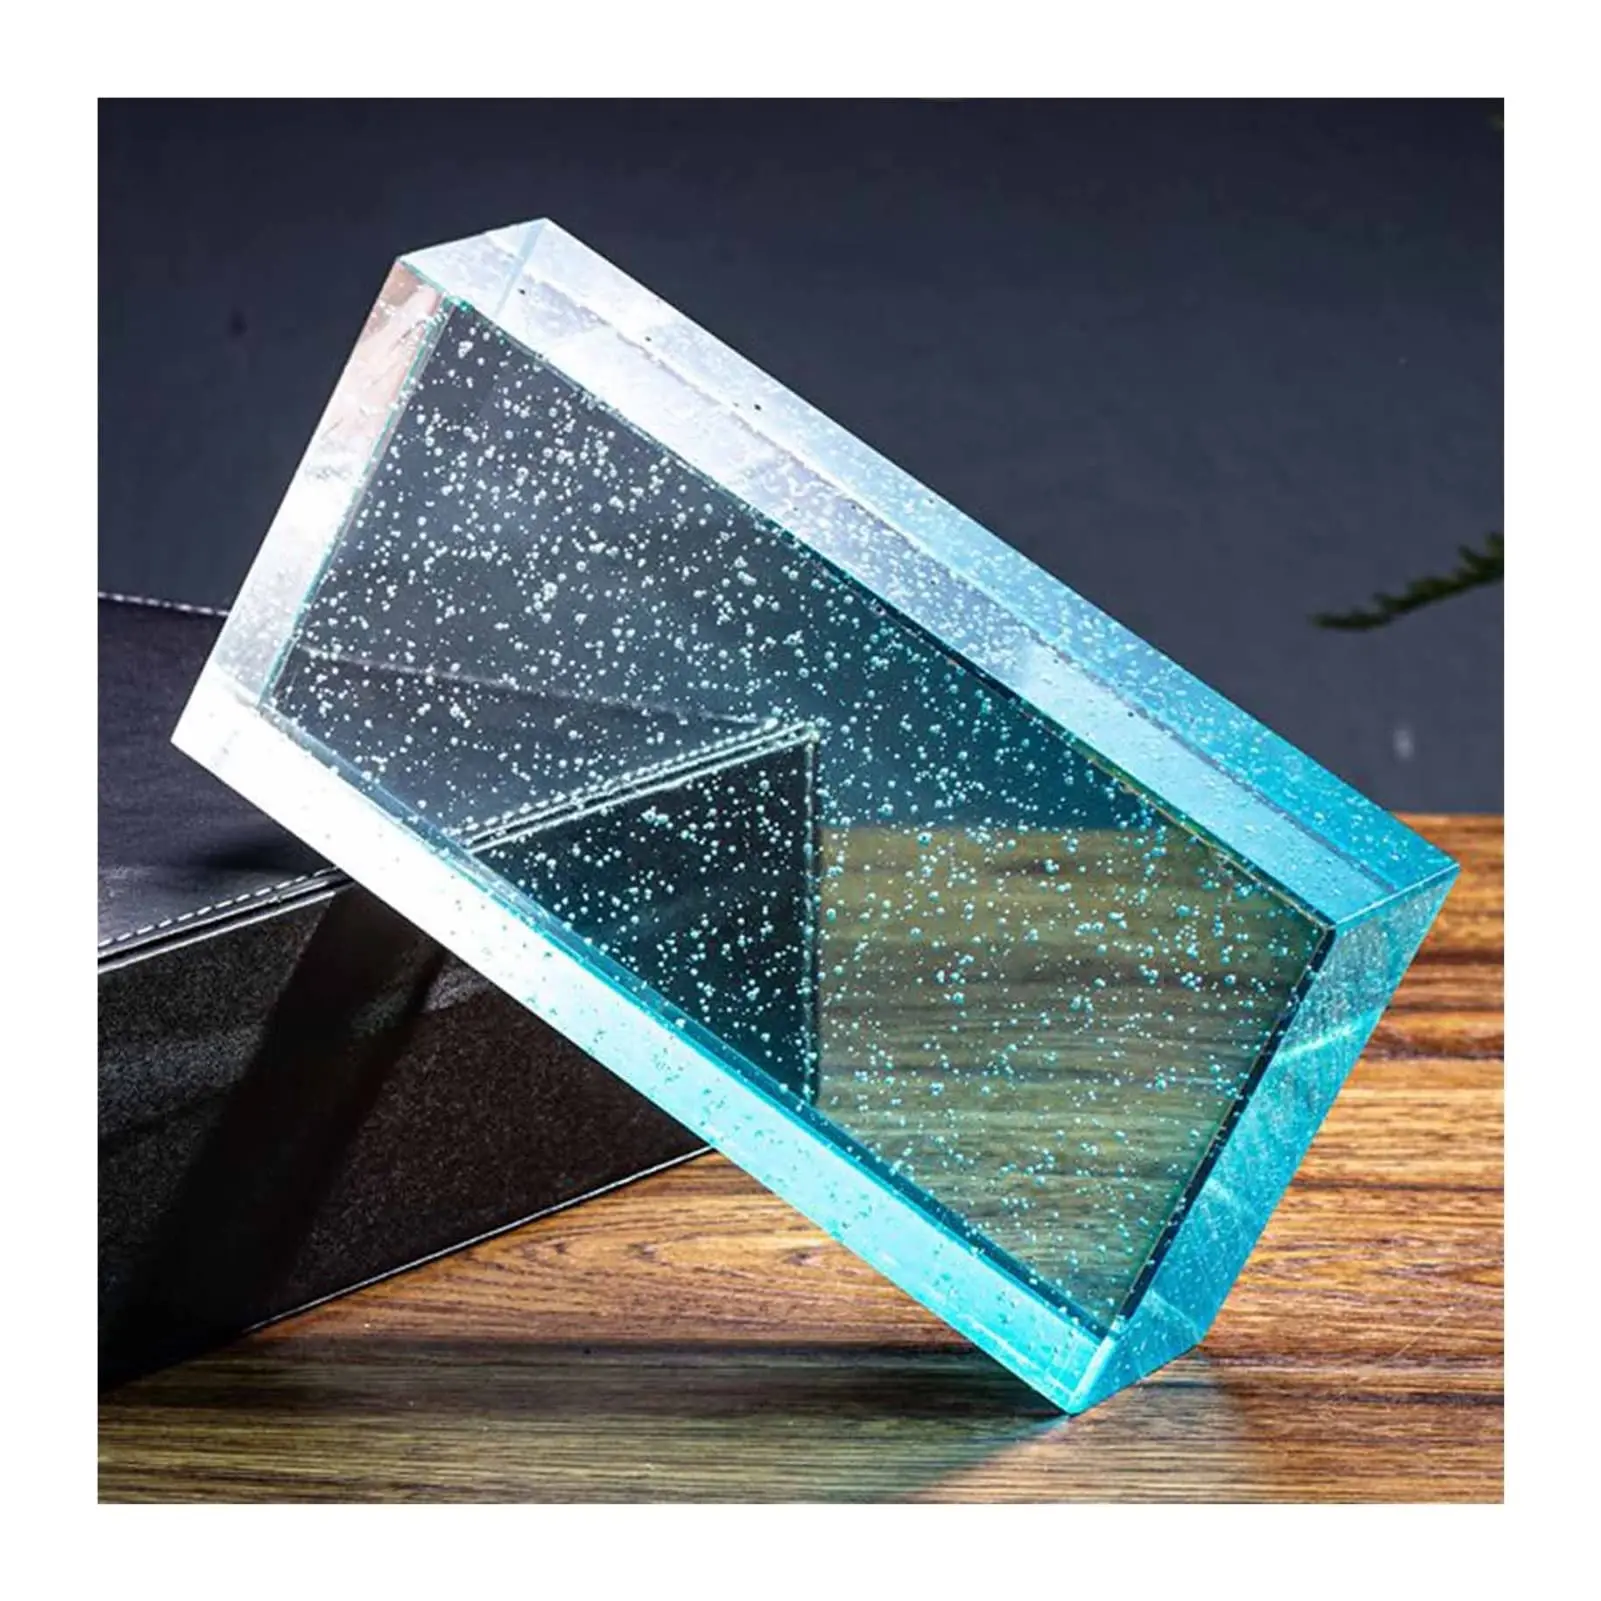 ladrillos de vidrio precio - Qué se usa para pegar ladrillos de vidrio